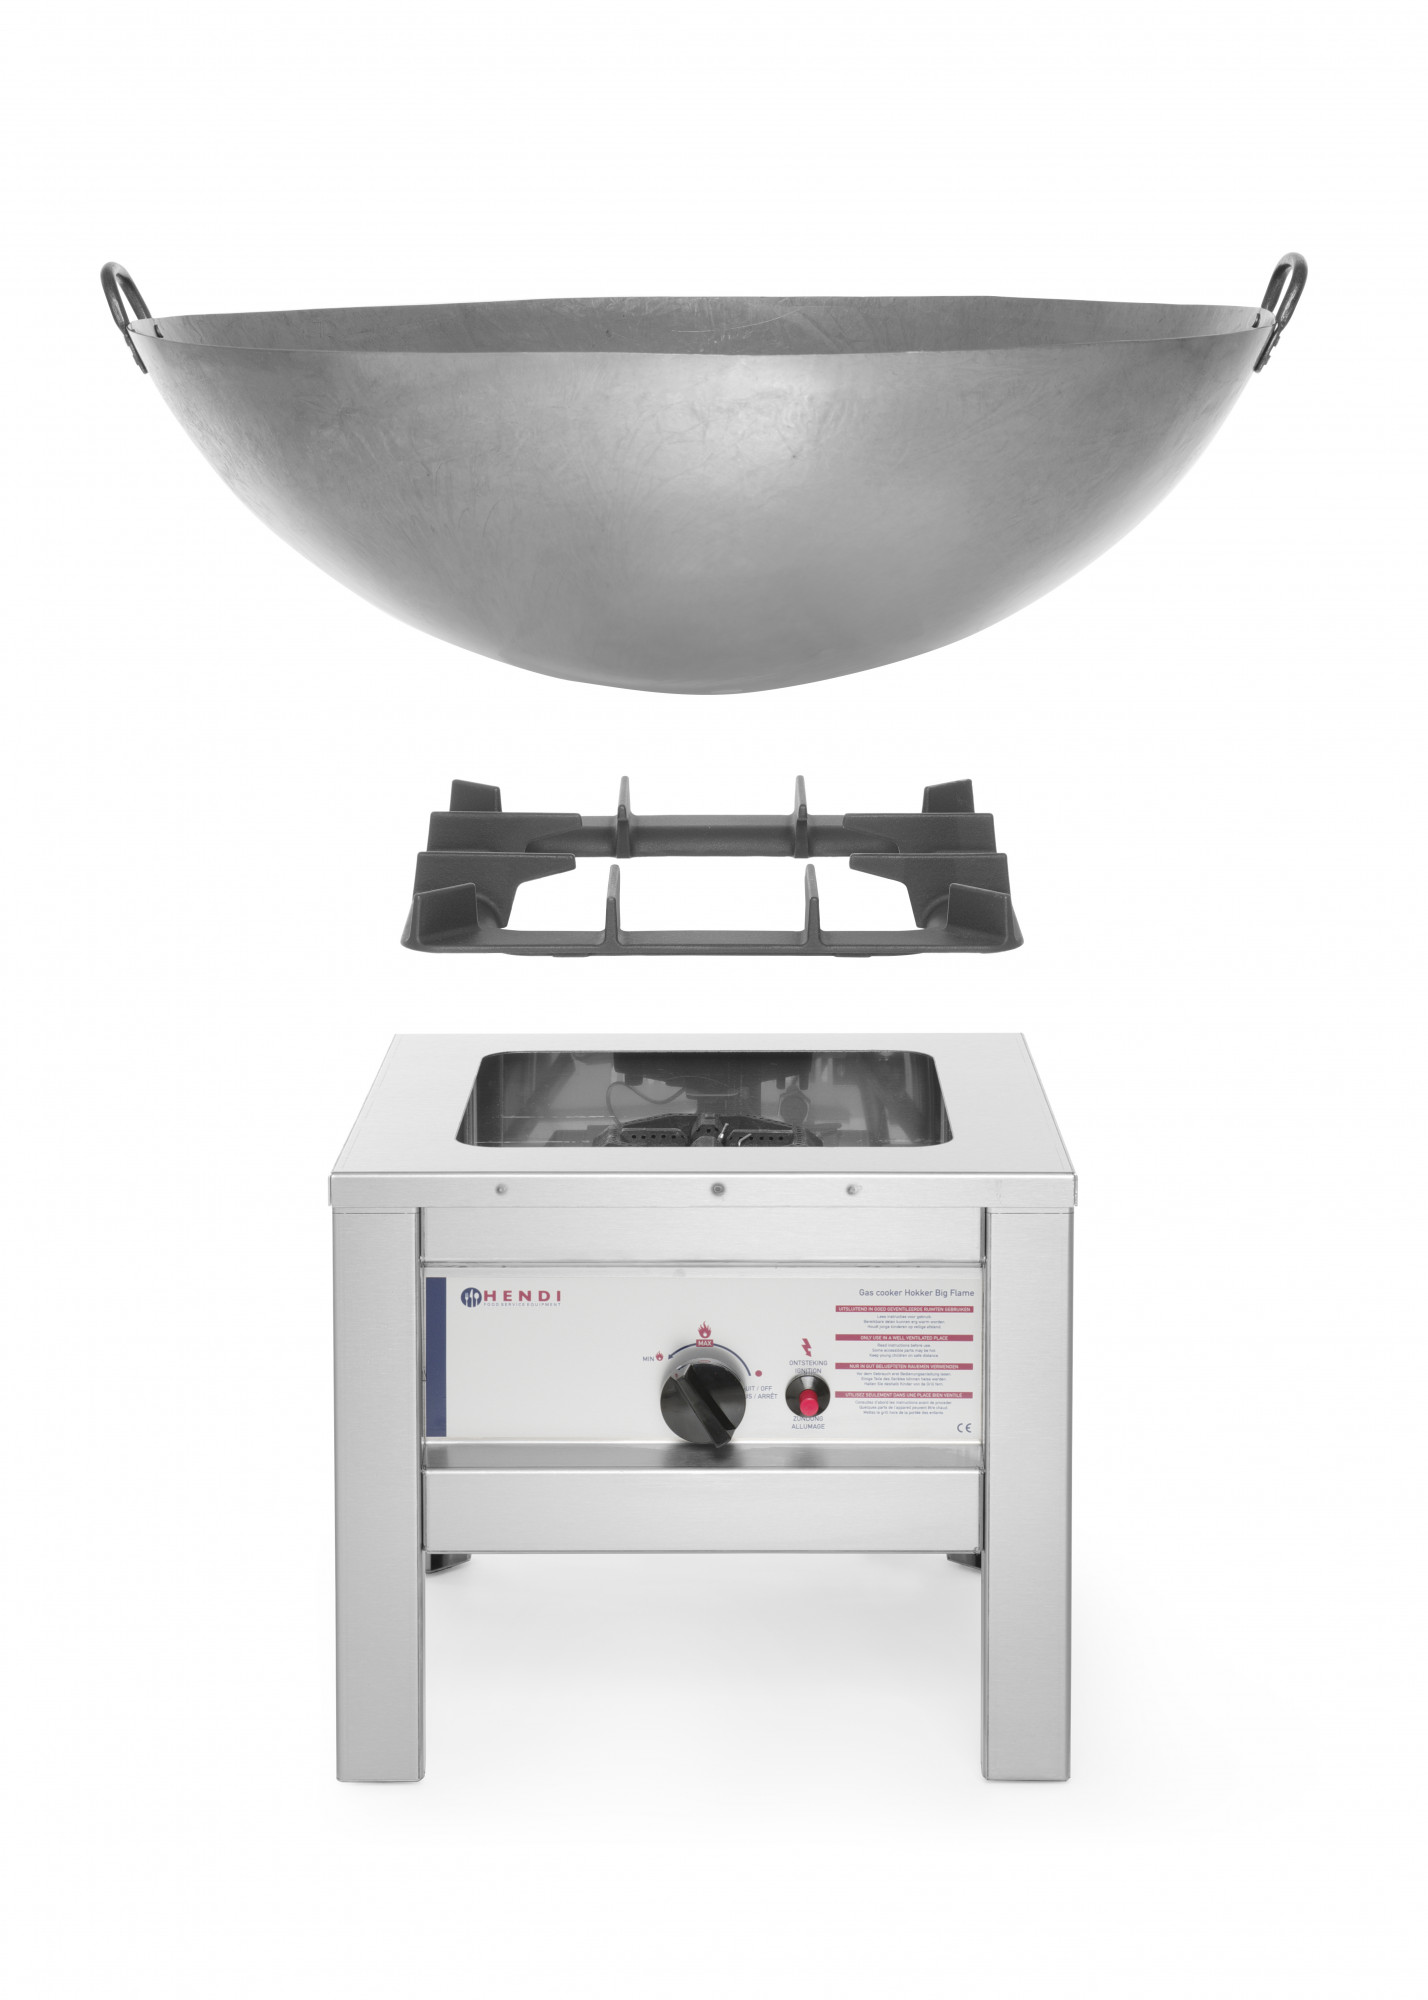 Montaż patelni wok na taborecie gazowym gastronomicznym.